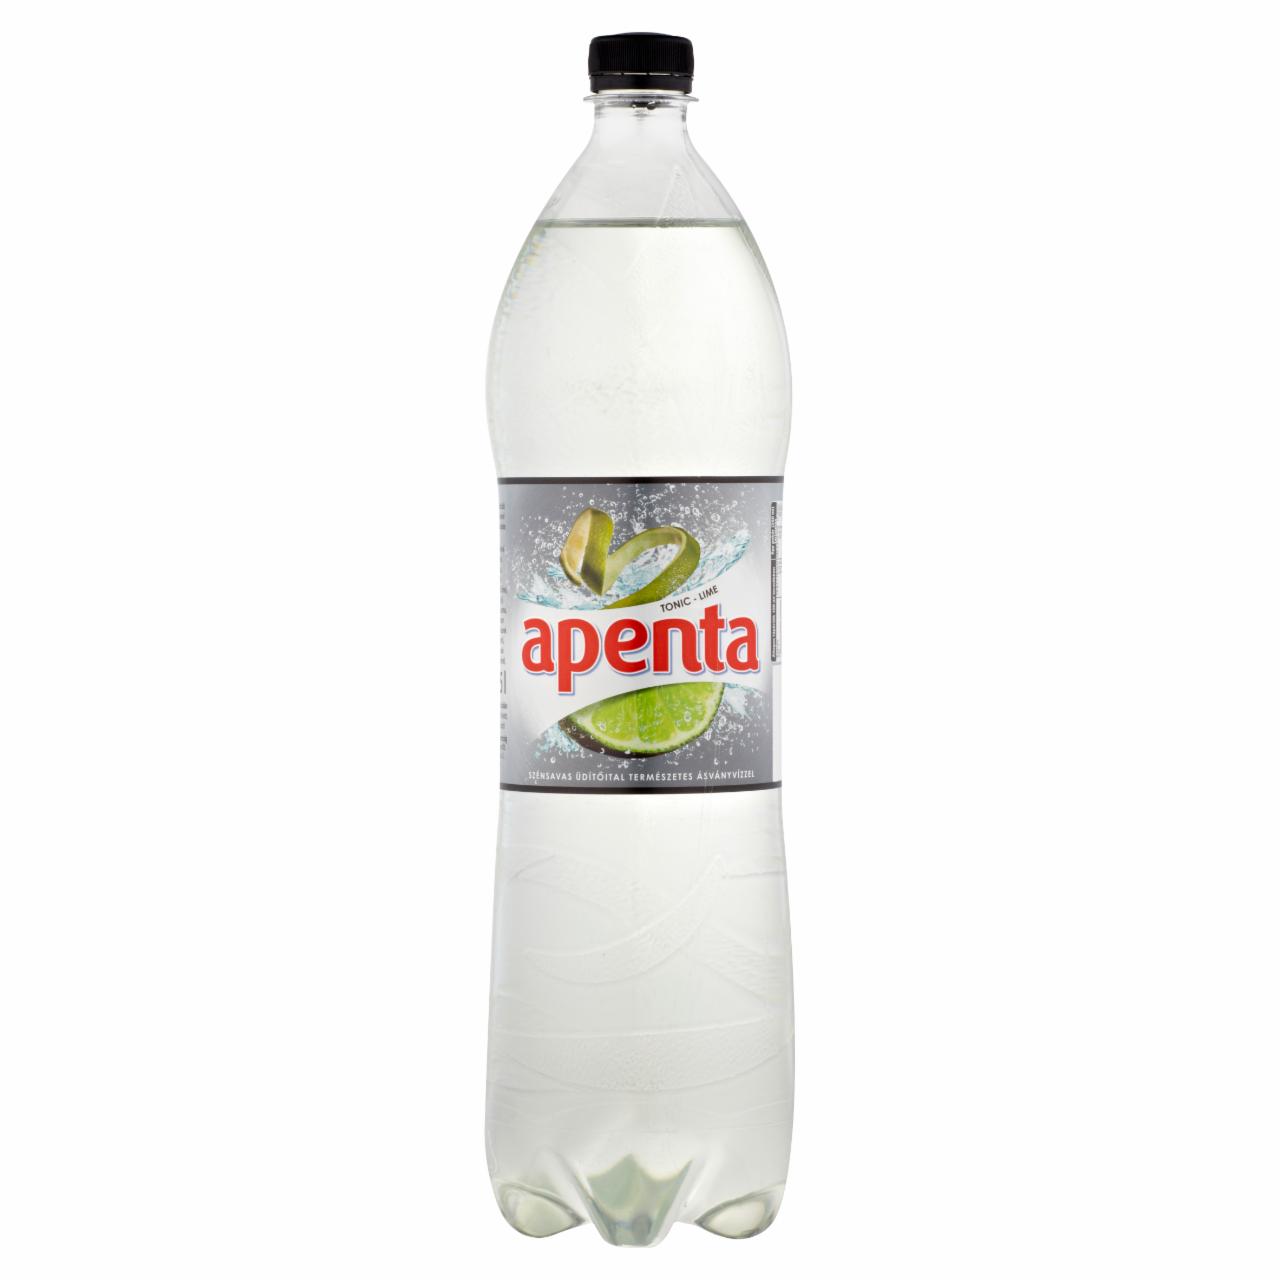 Képek - Apenta Exotic lime-tonic ízű szénsavas üdítőital 1,5 l